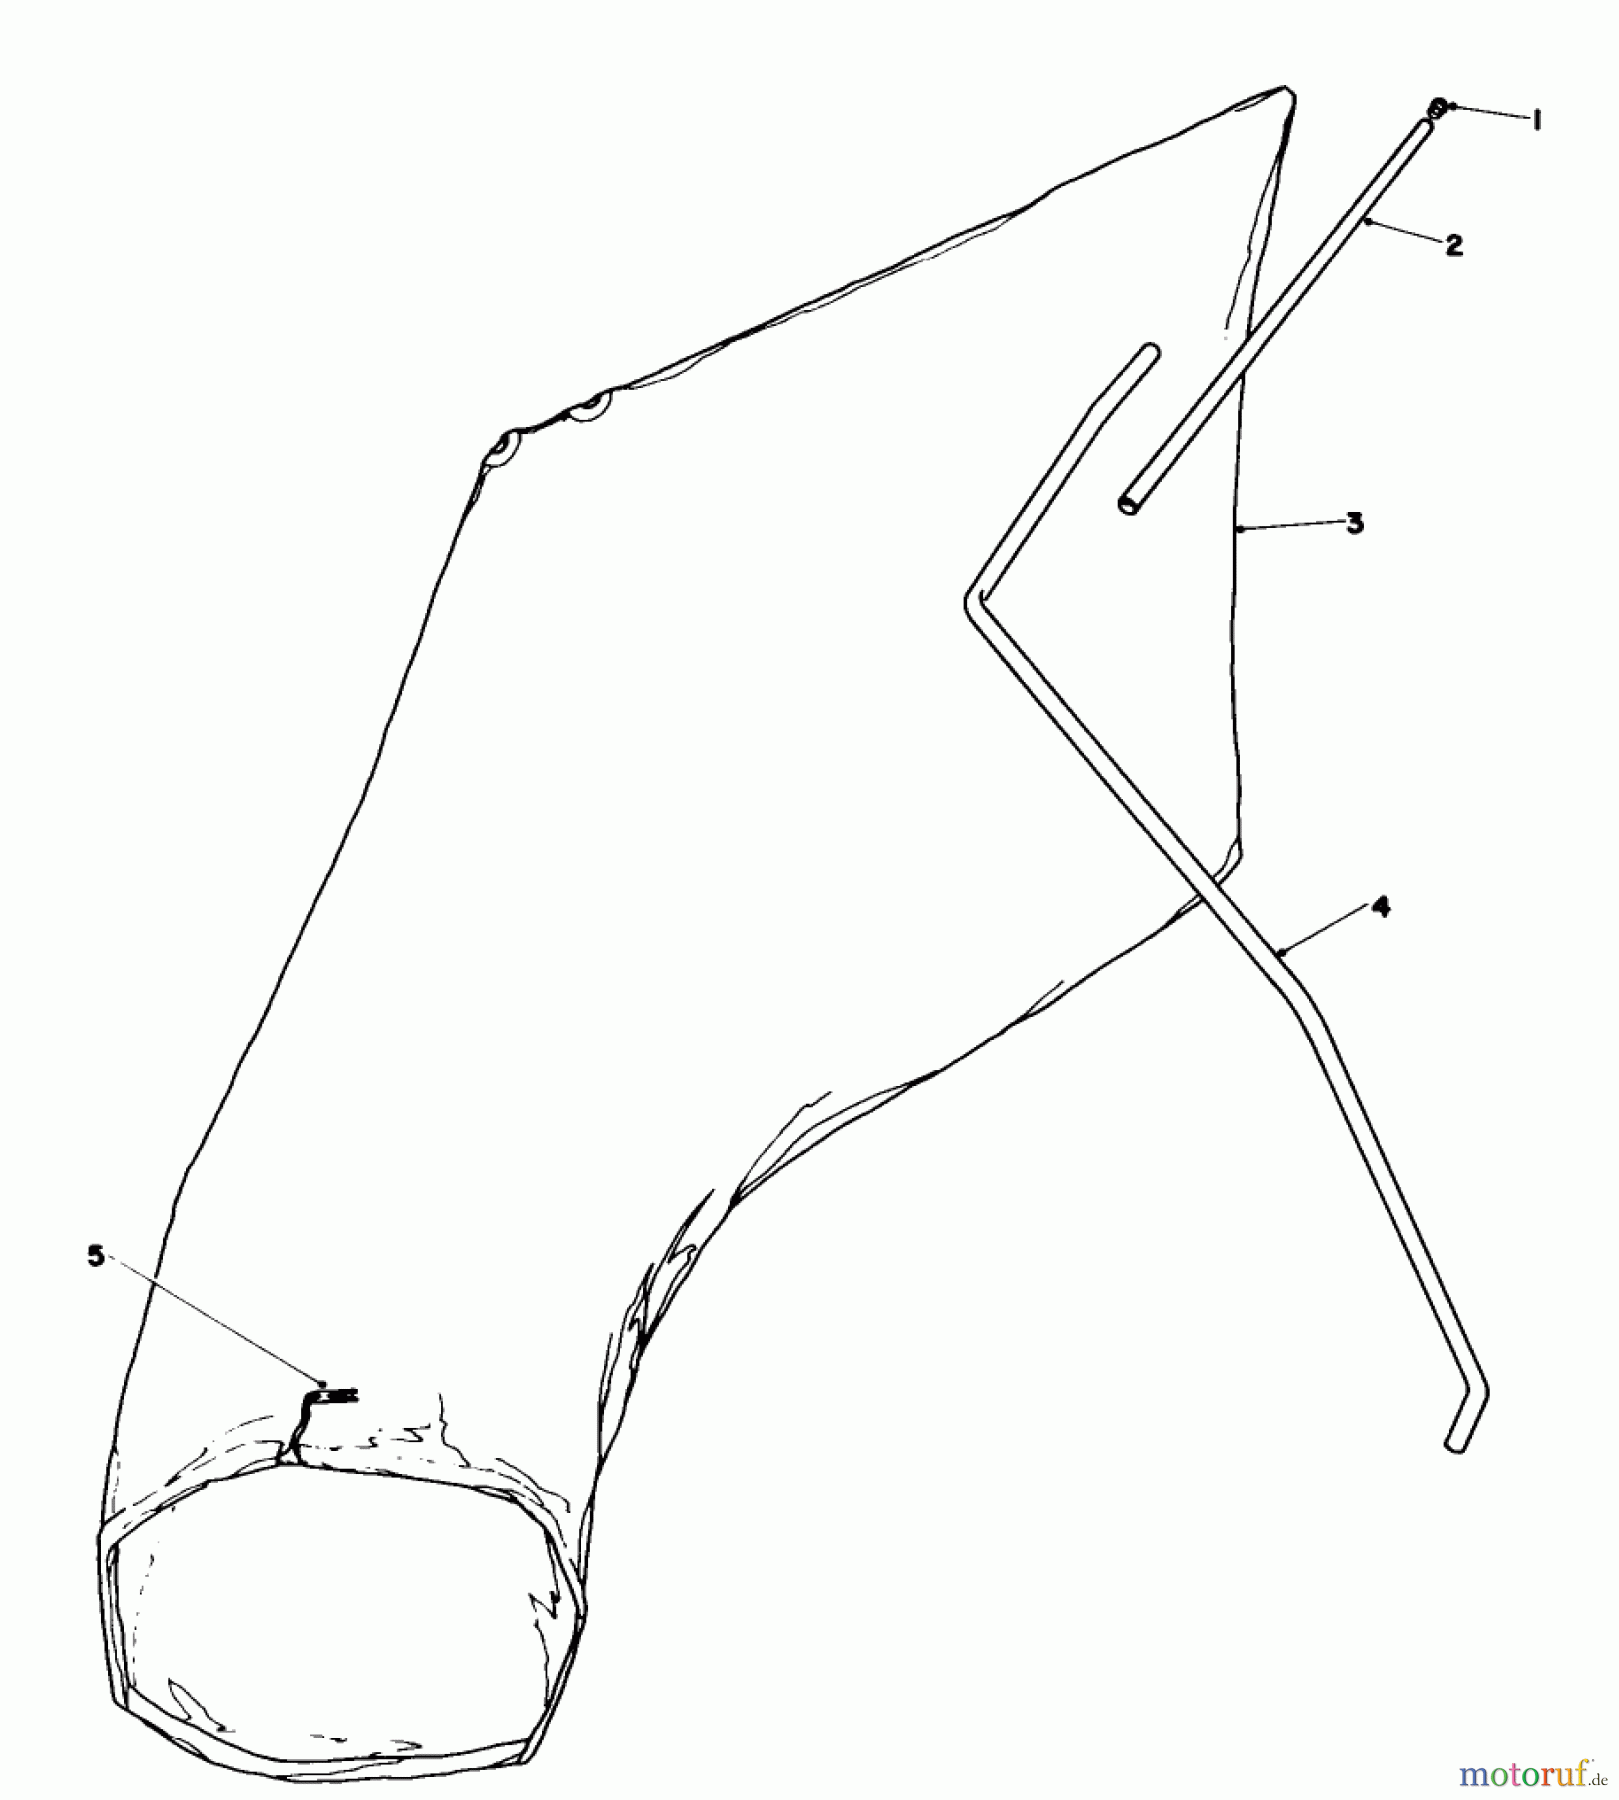  Toro Neu Mowers, Walk-Behind Seite 1 16165C - Toro Lawnmower, 1986 (6000001-6999999) GIANT BAGGING KIT NO. 29-9750 (OPTIONAL)